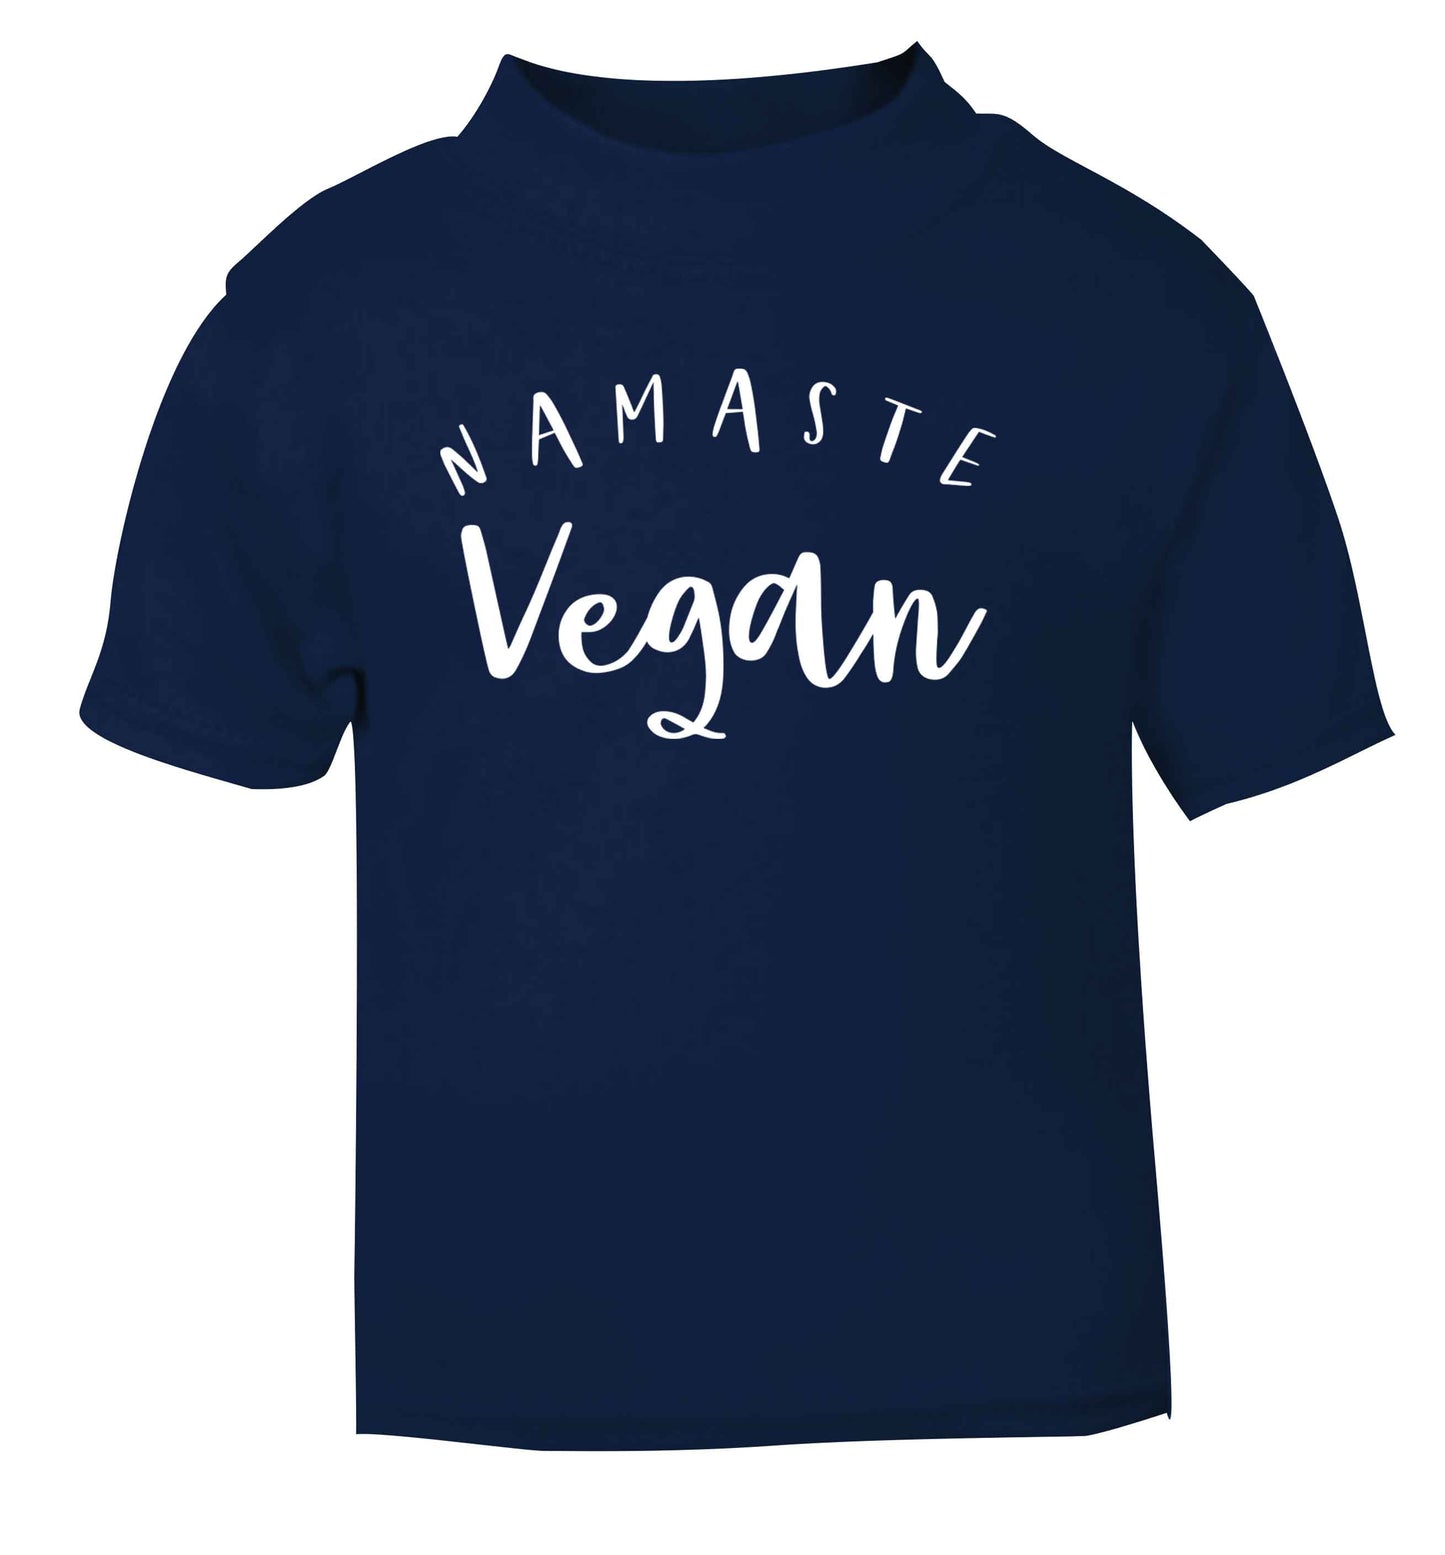 Namaste vegan navy Baby Toddler Tshirt 2 Years